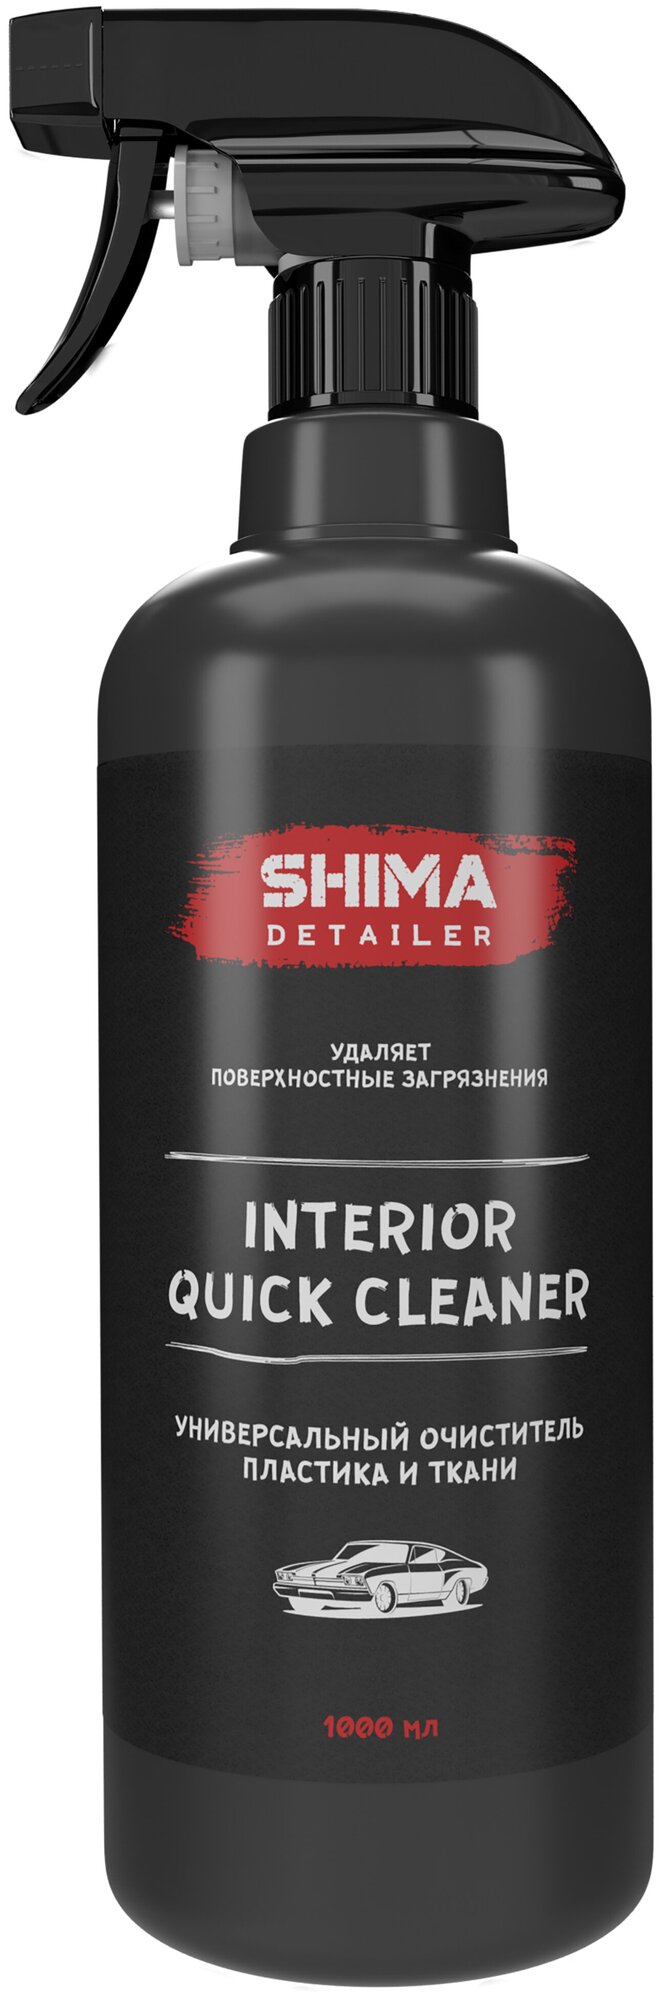 Очиститель SHIMA DETAILER INTERIOR QUICK CLEANER универсальный 500мл 4603740921794